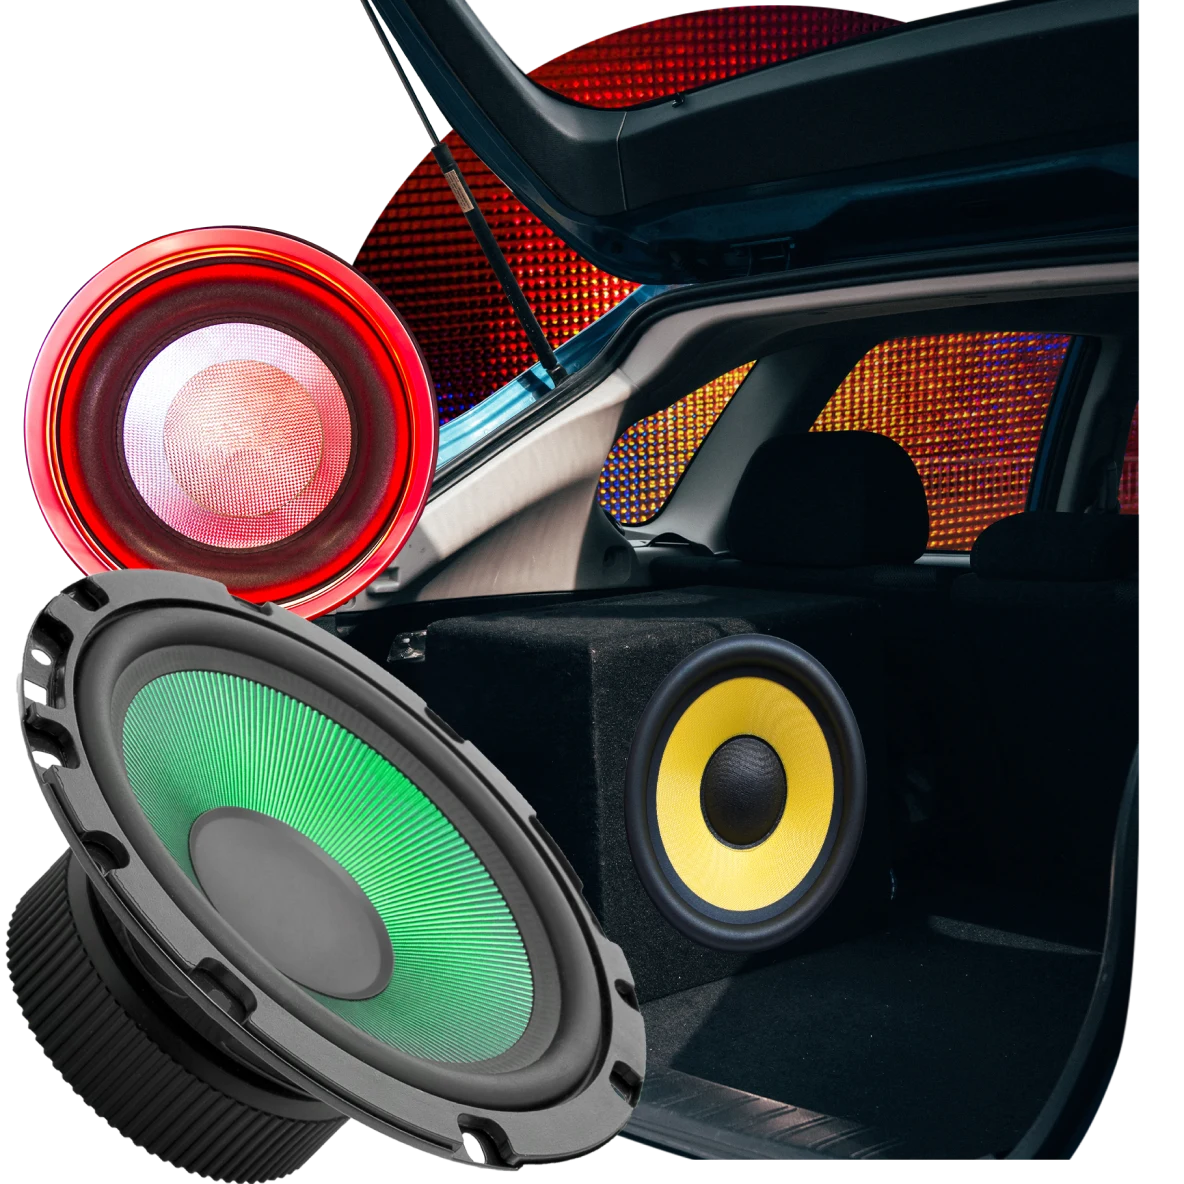 Eine Collage mit Teilen eines Auto-Soundsystems. Rote, gelbe, schwarze und grüne Lautsprecher. Der offene Kofferraum eines Autos vor einem großen Scheinwerfer.